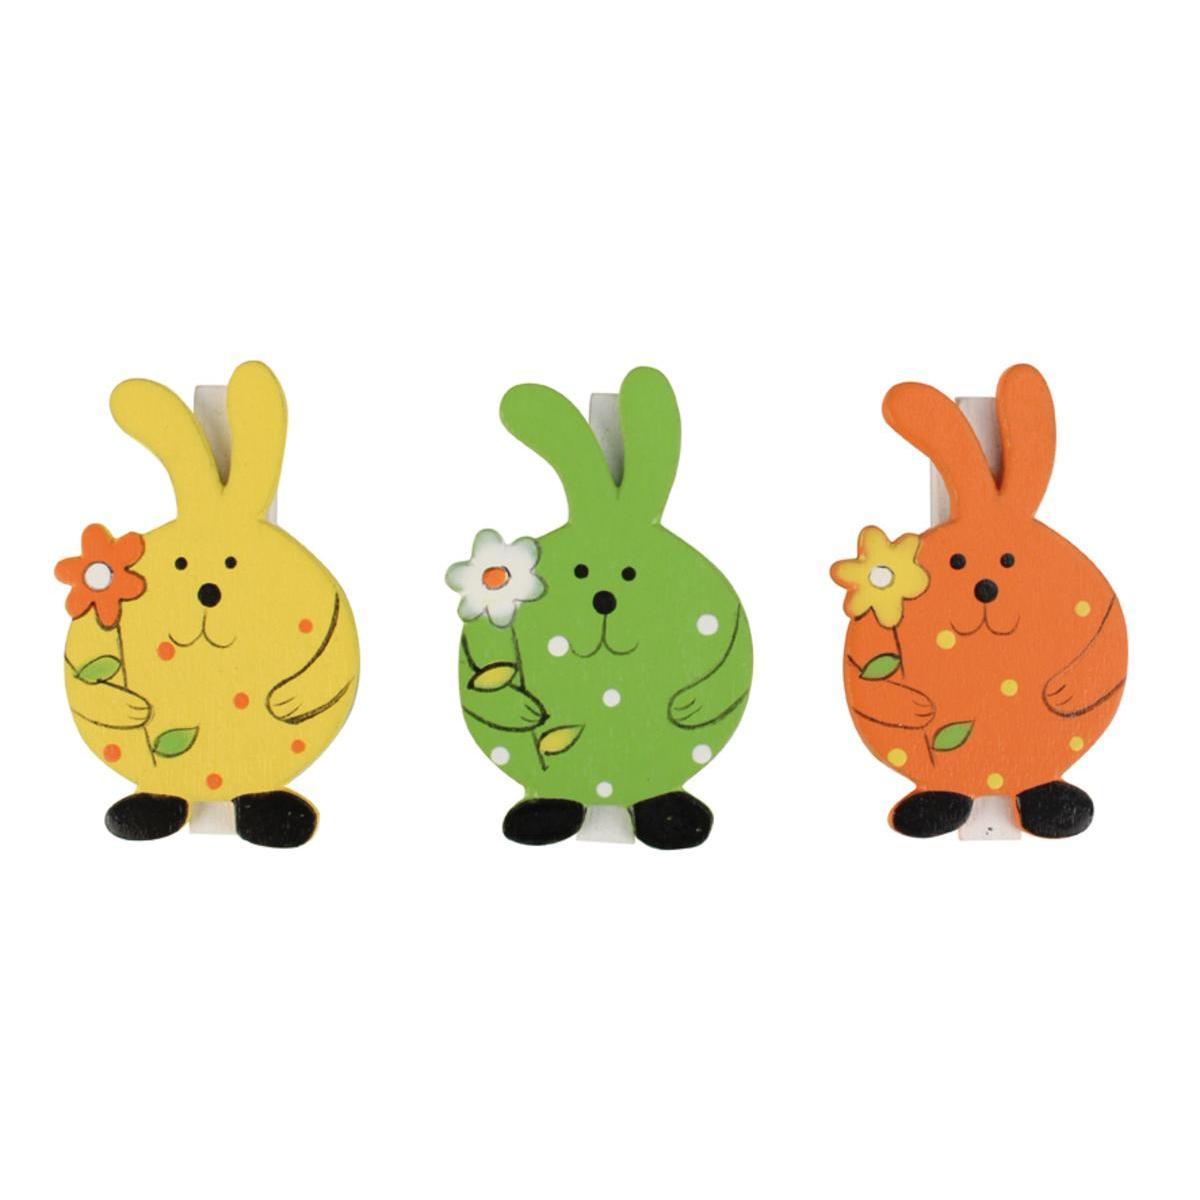 6 pinces lapins - Bois - 4,5 cm - Vert, jaune et orange